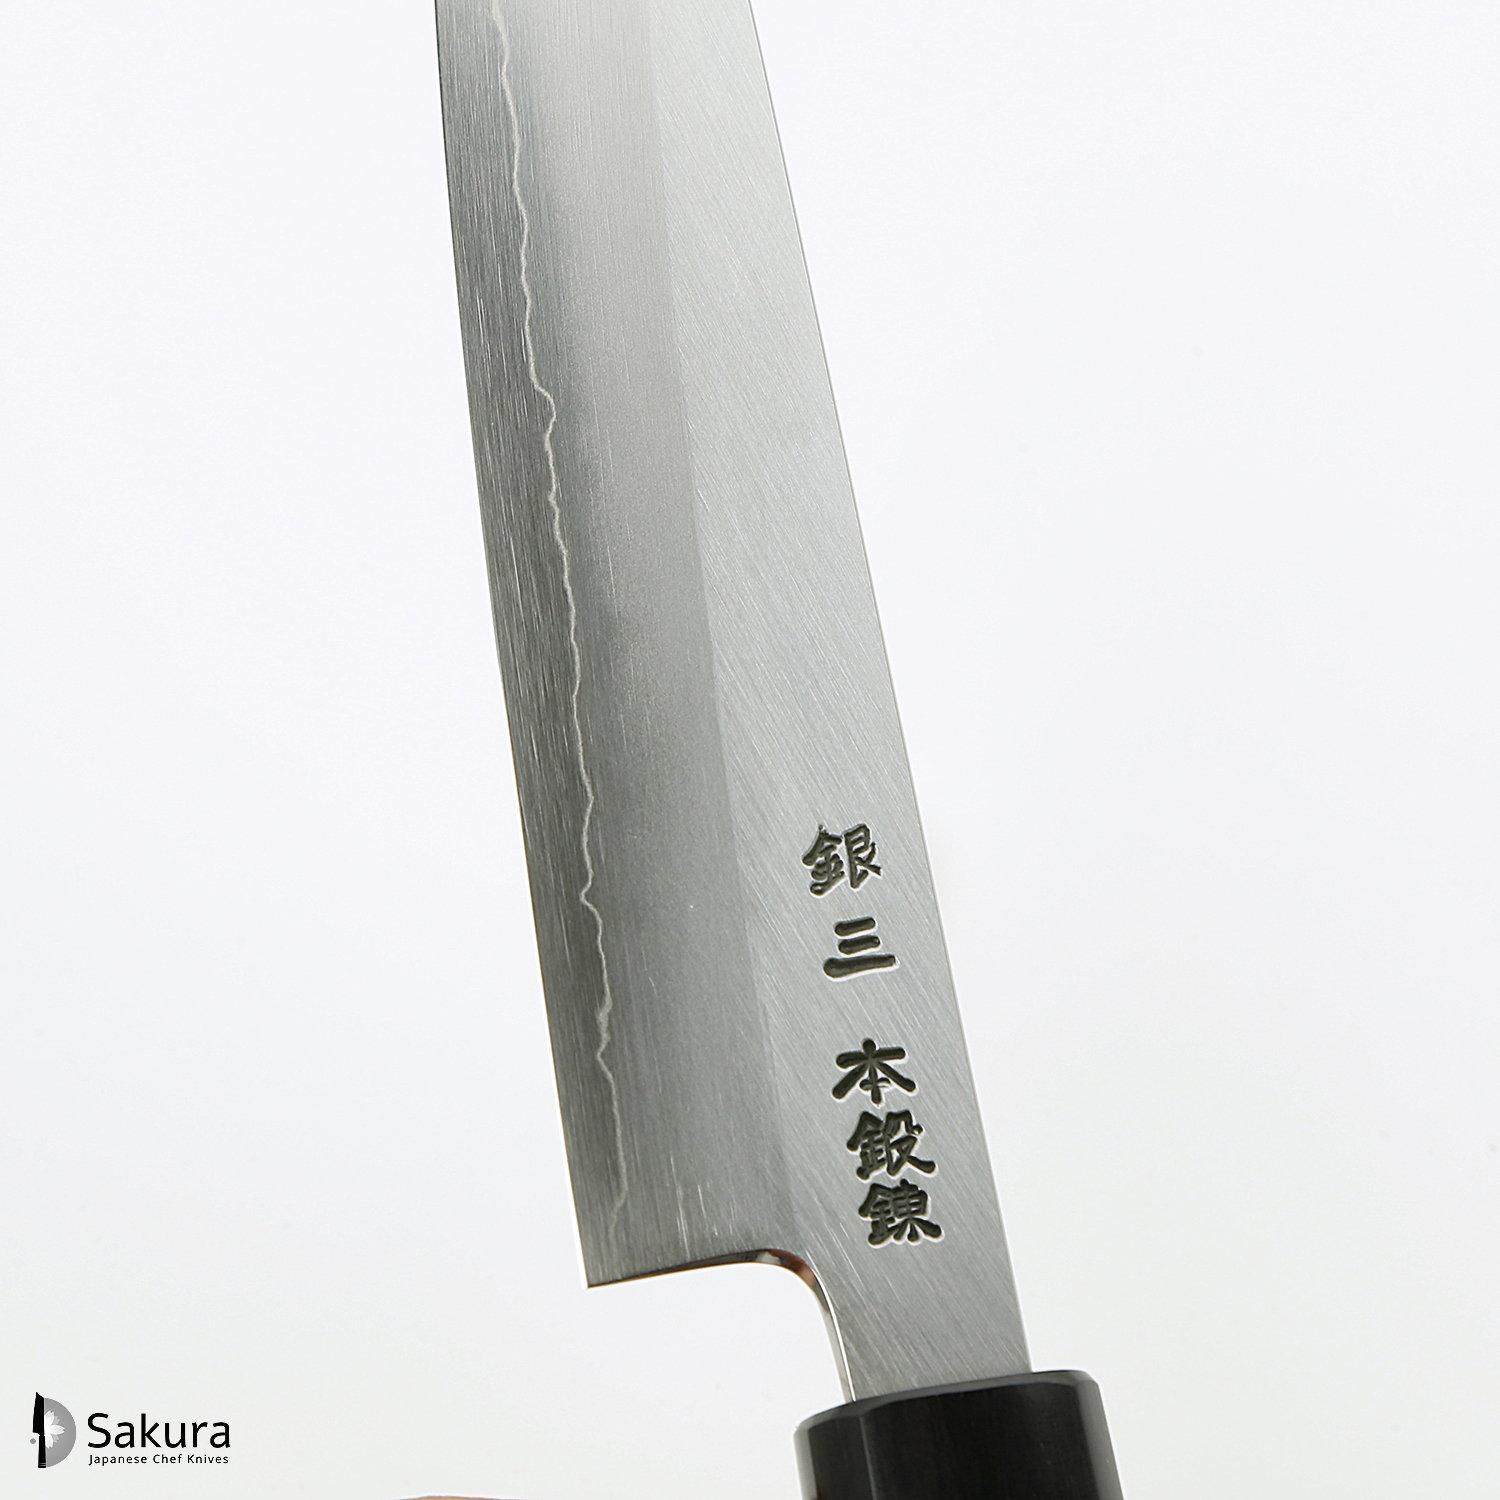 סכין עזר קטנה רב-תכליתית פֶּטִי 150מ״מ מחושלת בעבודת יד 3 שכבות: פלדת פחמן יפנית מתקדמת מסוג Ginsan Silver#3 עטופה פלדת אל-חלד בגימור מט מלוטש גימור מט מלוטש האדו יפן